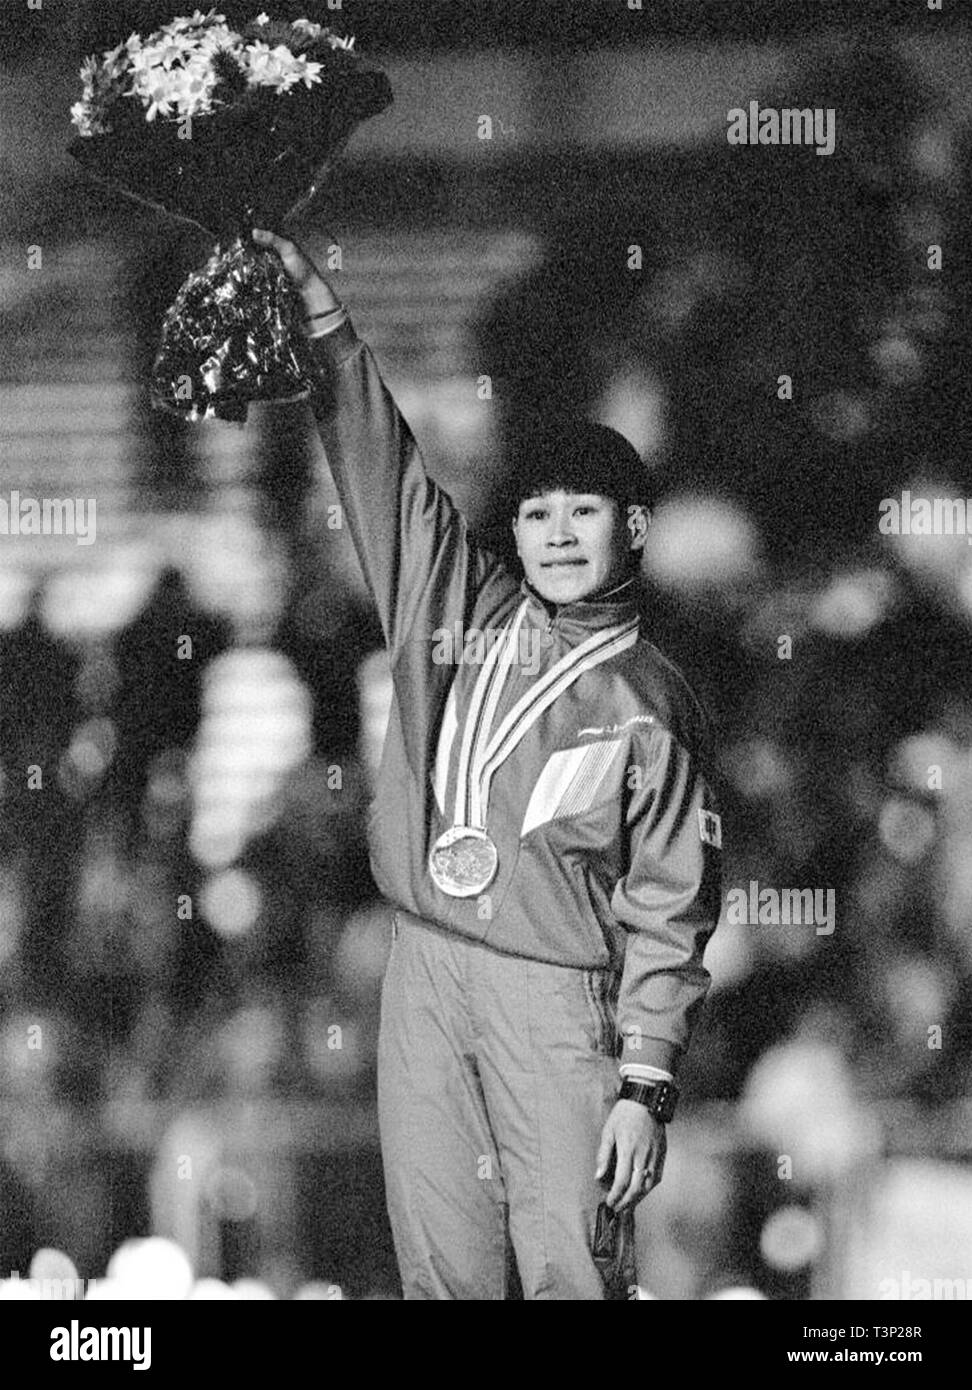 (190411) -- Pechino, 11 aprile 2019 (Xinhua) -- File foto scattata nel febbraio 10, 1992 mostra il secondo posto Ye Qiaobo festeggiare sul podio durante la cerimonia di premiazione della donna 500m di pattinaggio di velocità degli eventi al 1992 Albertville Olimpiadi Invernali. Essa è stata la Cina del primo inverno medaglia olimpica. Da inviare agli atleti di Helsinki Giochi Olimpici Estivi per la prima volta nel 1952 per vincere l'offerta di ospitare 2022 Giochi Olimpici Invernali nel 2015, la Repubblica popolare cinese è andato attraverso una notevole storia di sport, tra cui hosting con successo il 2008 Giochi olimpici estivi e di preparazione per il Foto Stock